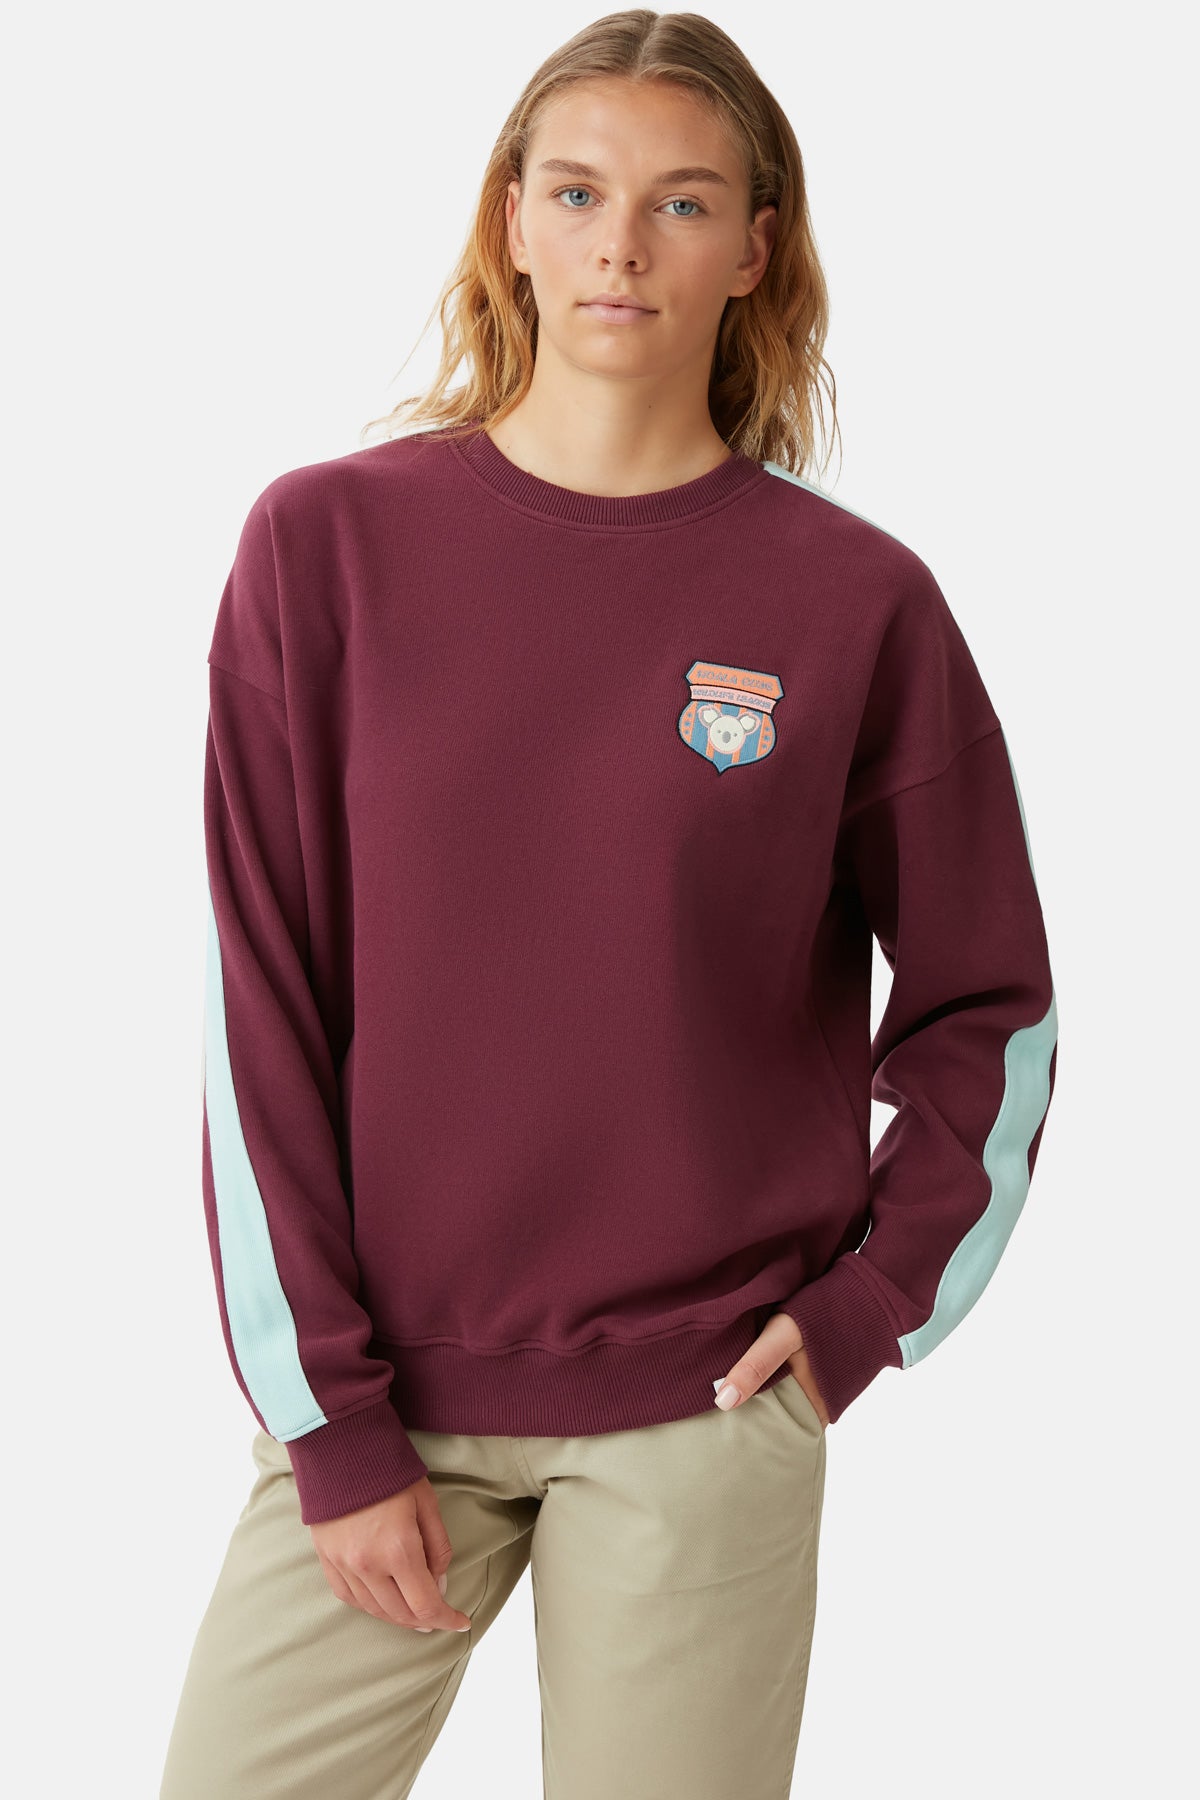 Koala Club Sweatshirt - Bordo